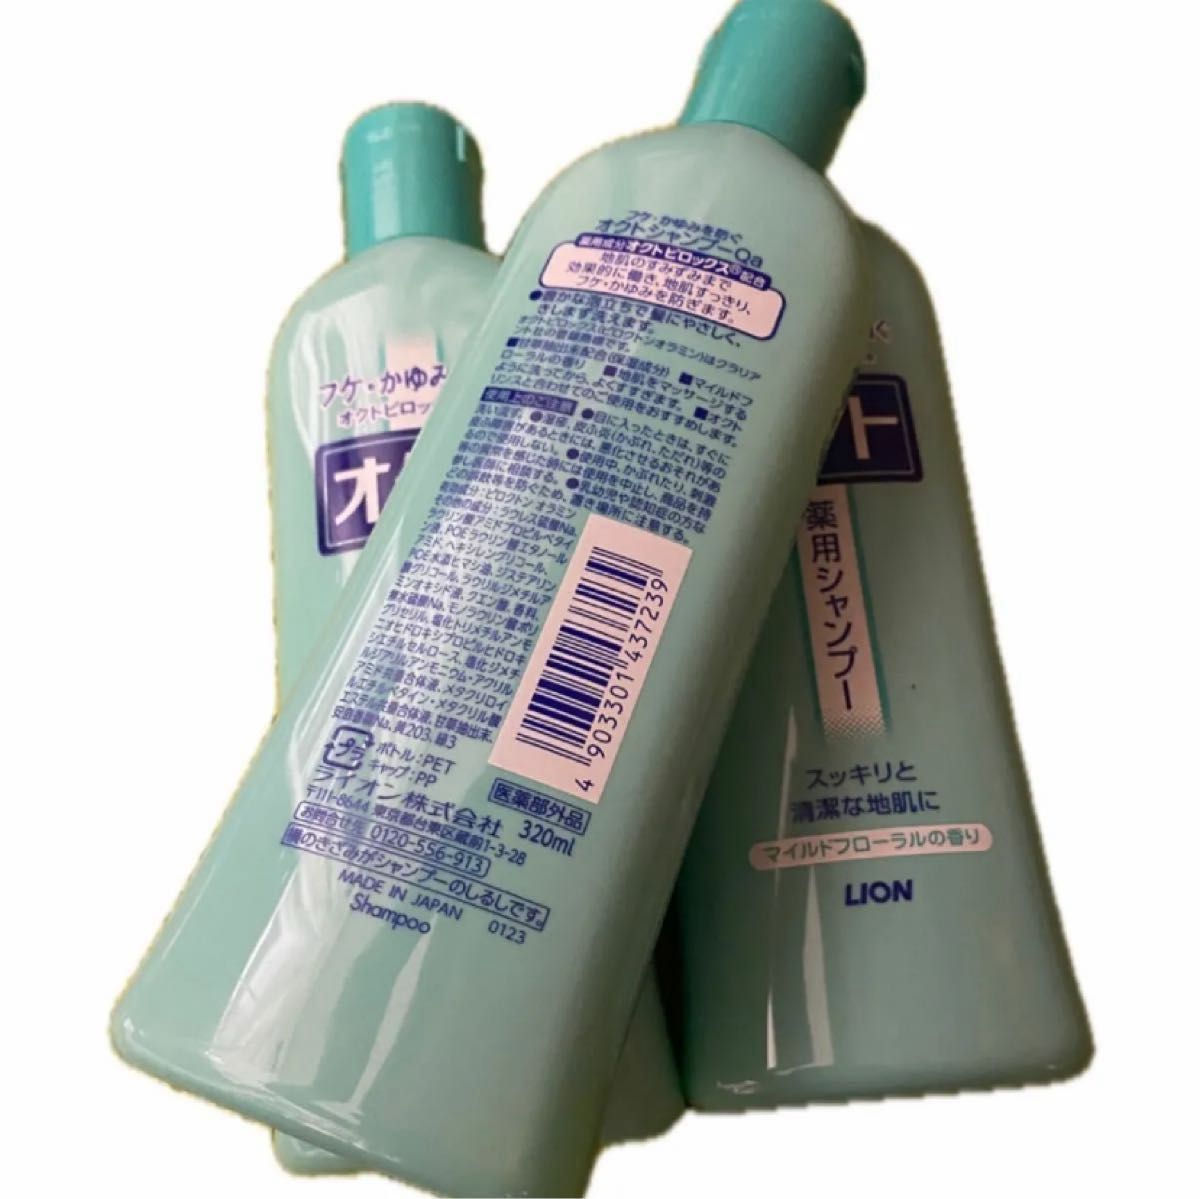 ライオン オクト 薬用シャンプー ボトル 320ml×3個セット  新品未使用    医薬部外品